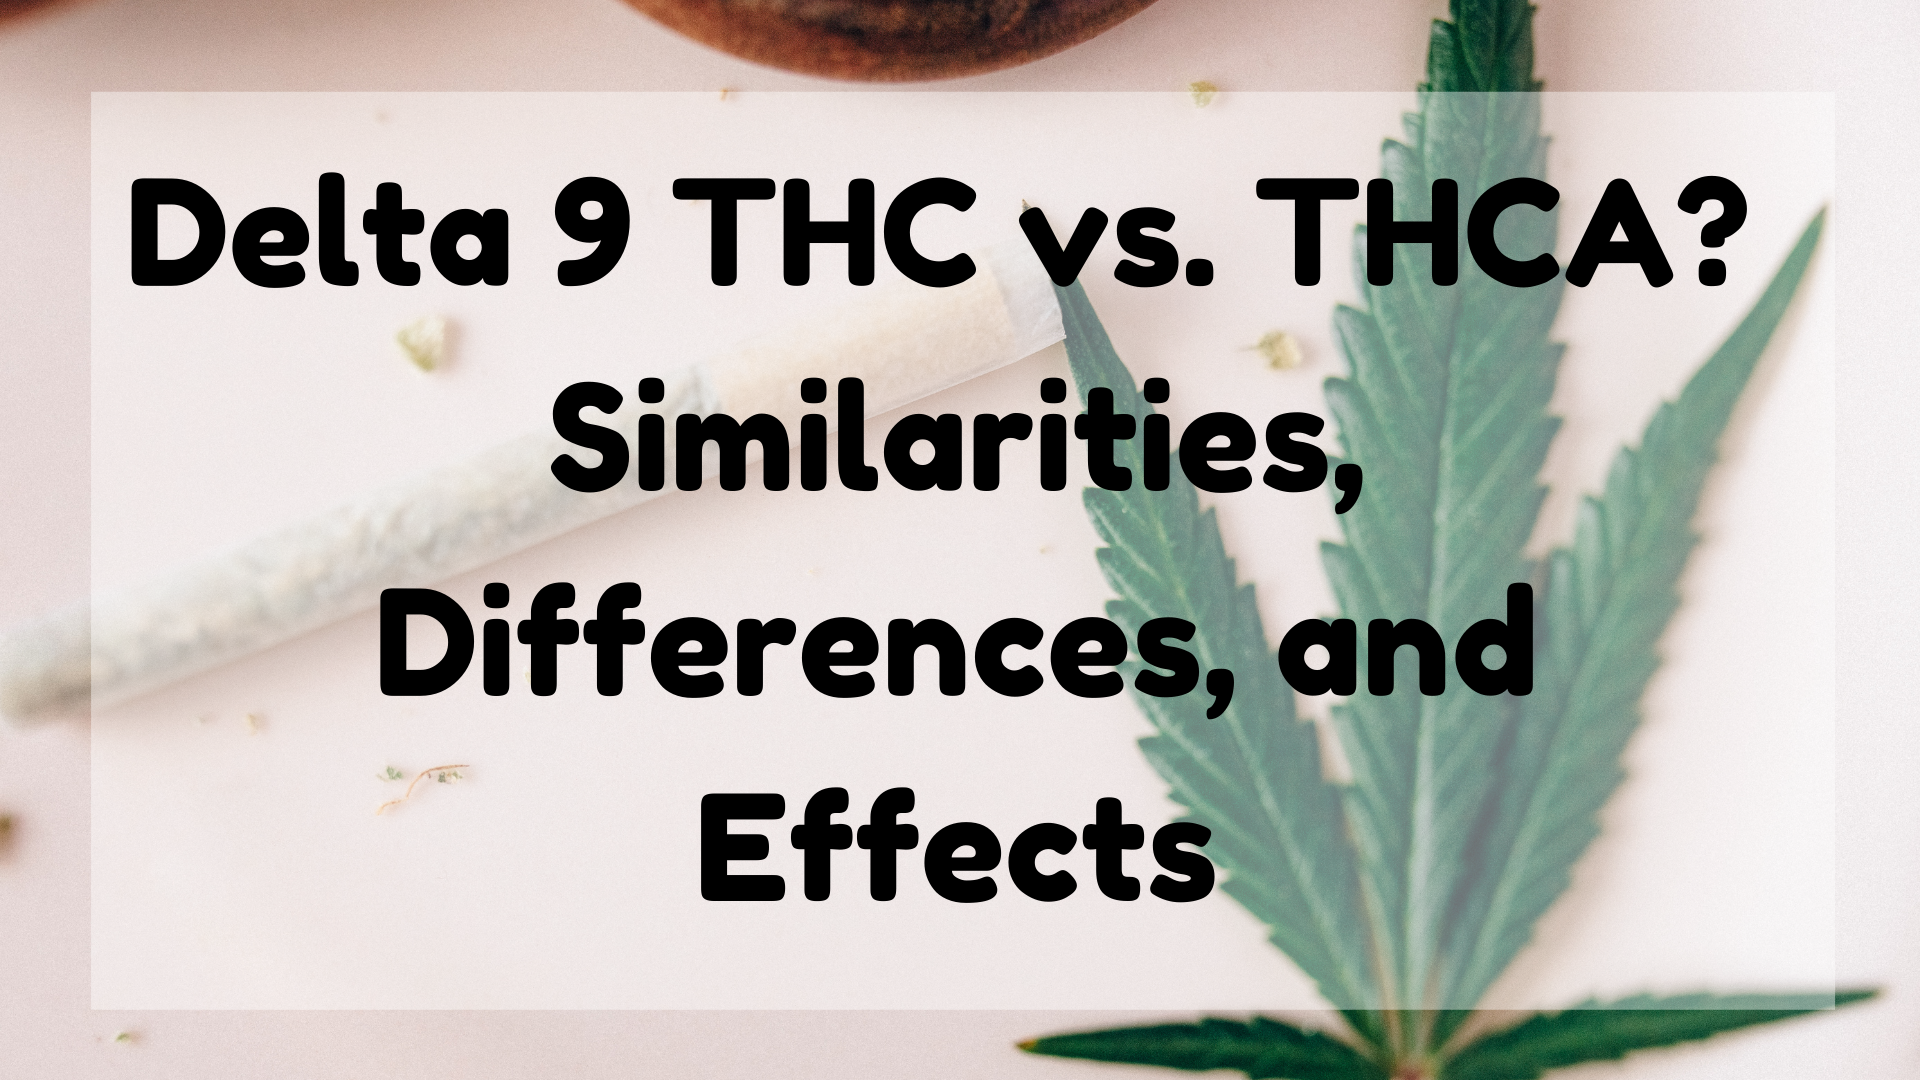 Delta 9 THC vs. THCA